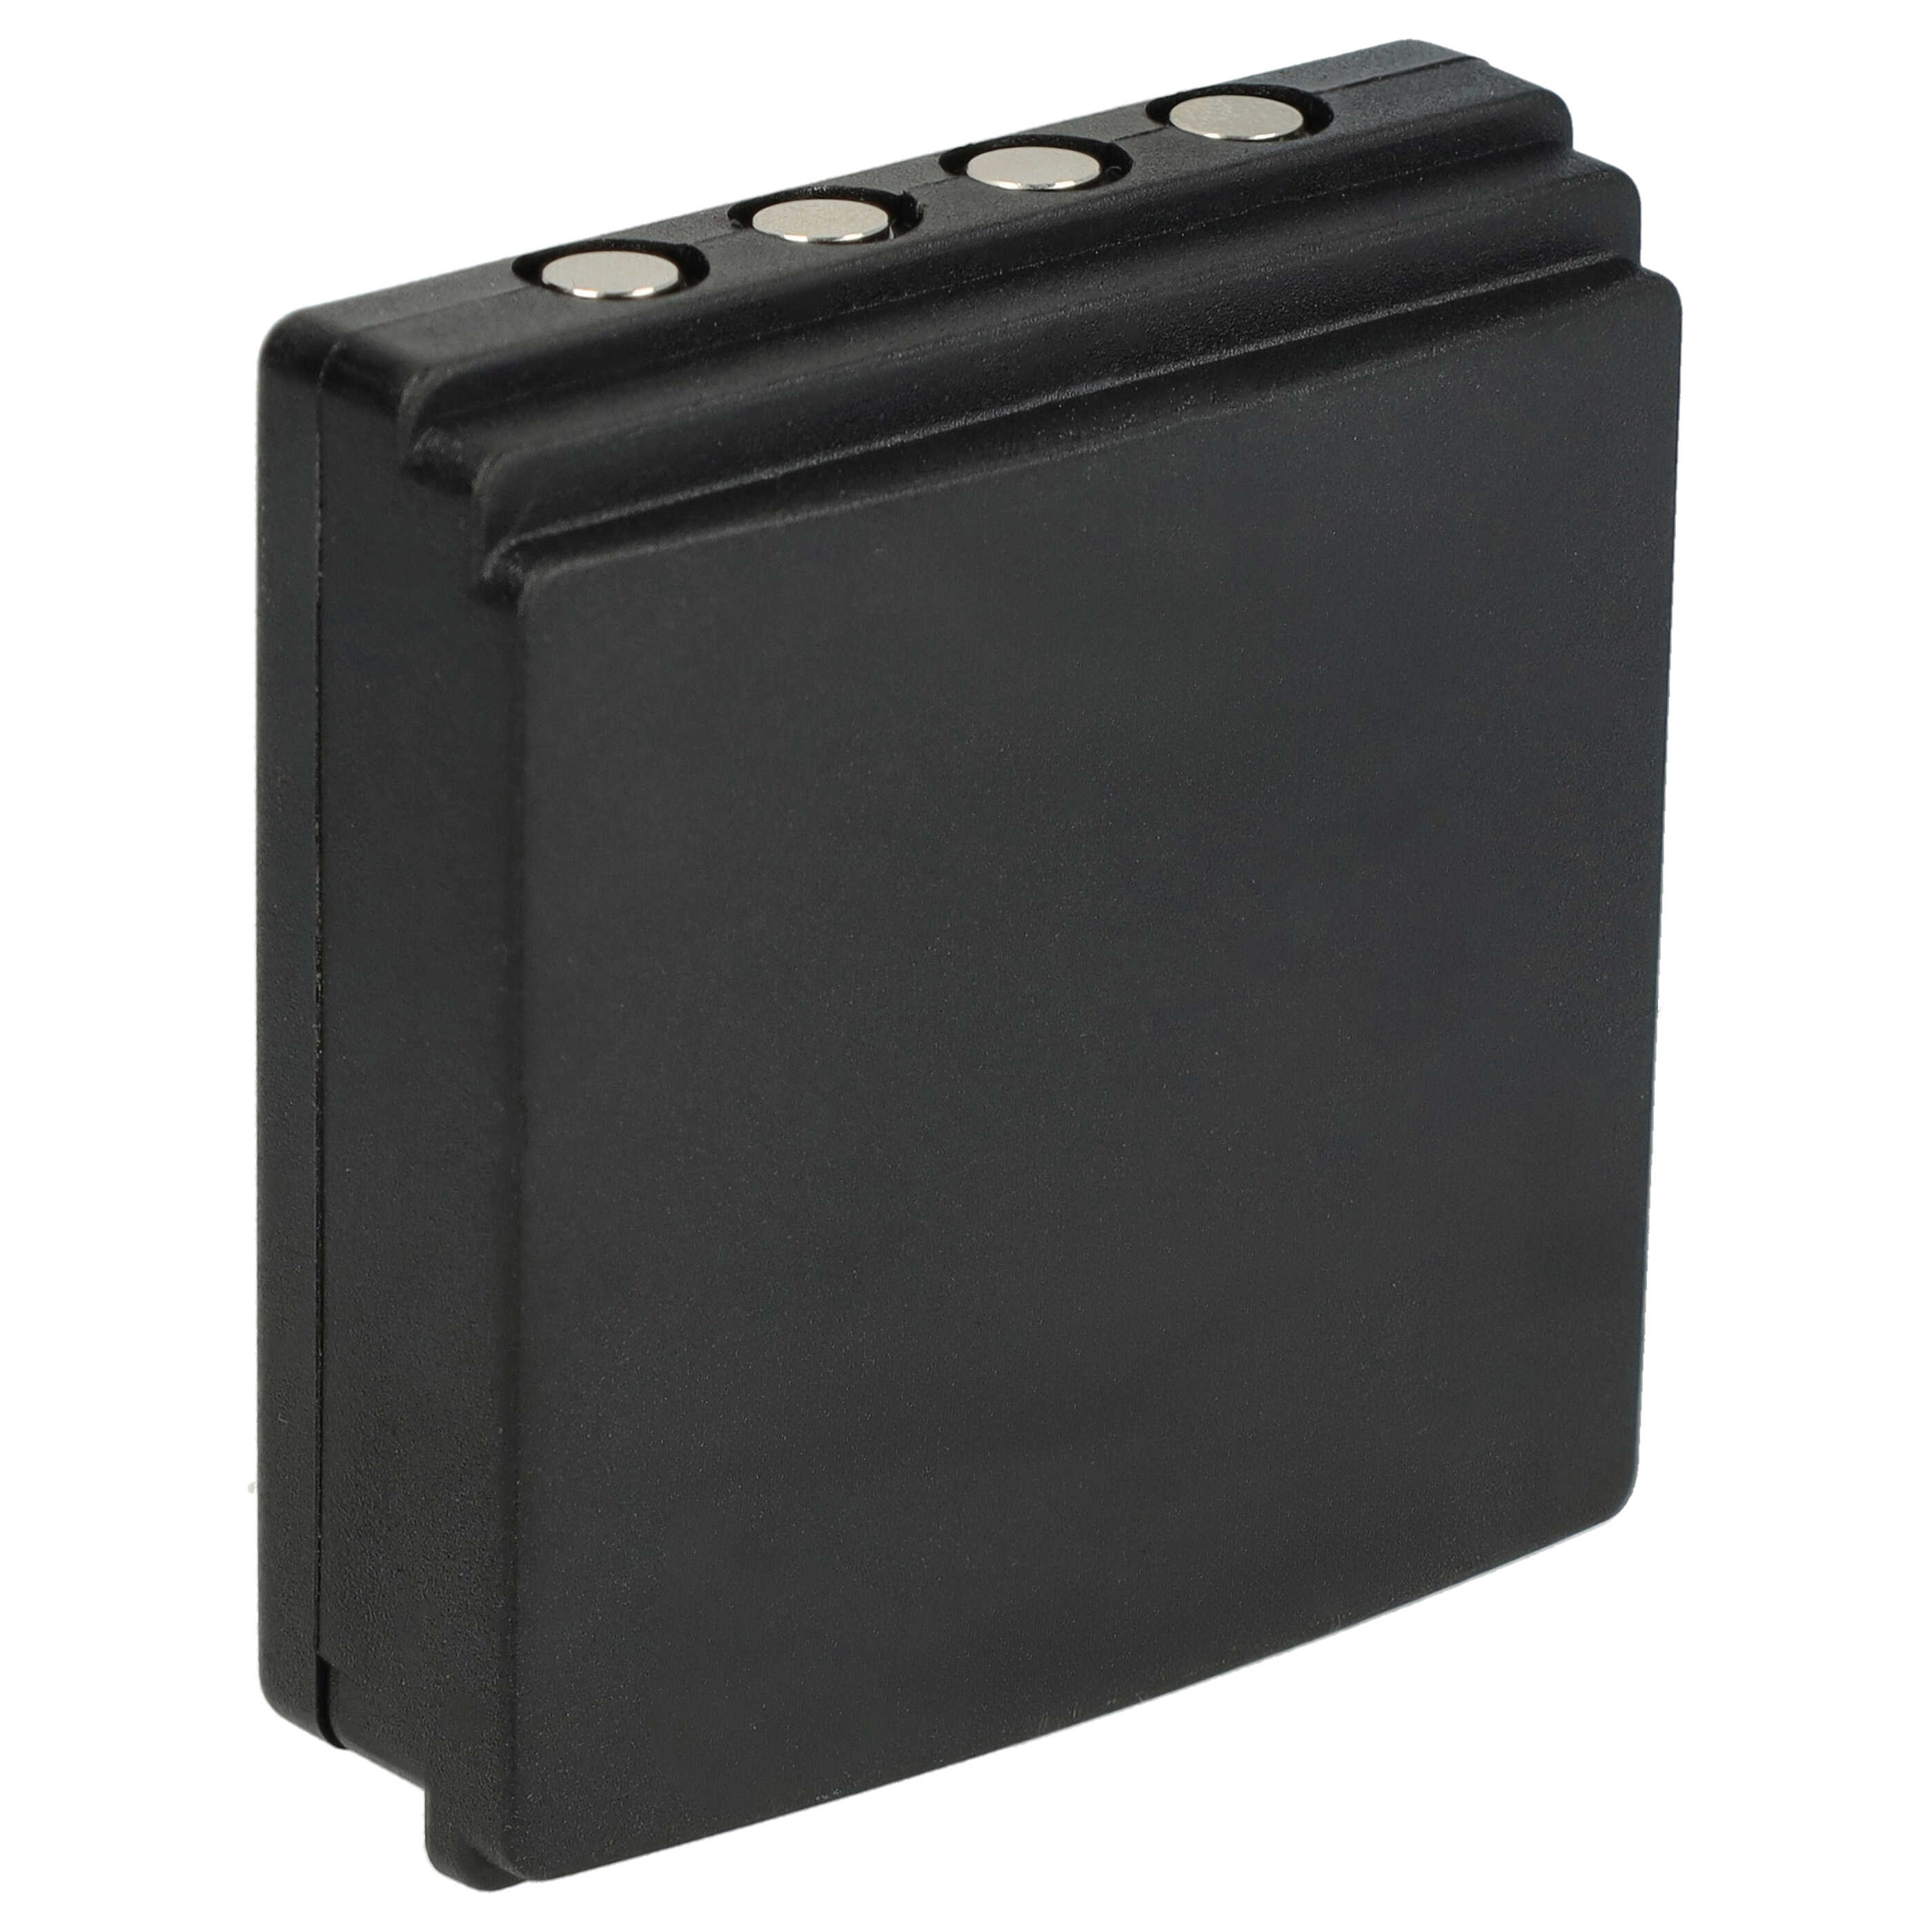 Batteria per radiocomando industriale sostituisce HBC BA203000, BA205030, 005-01-00615 HBC - 700mAh 6V NiMH